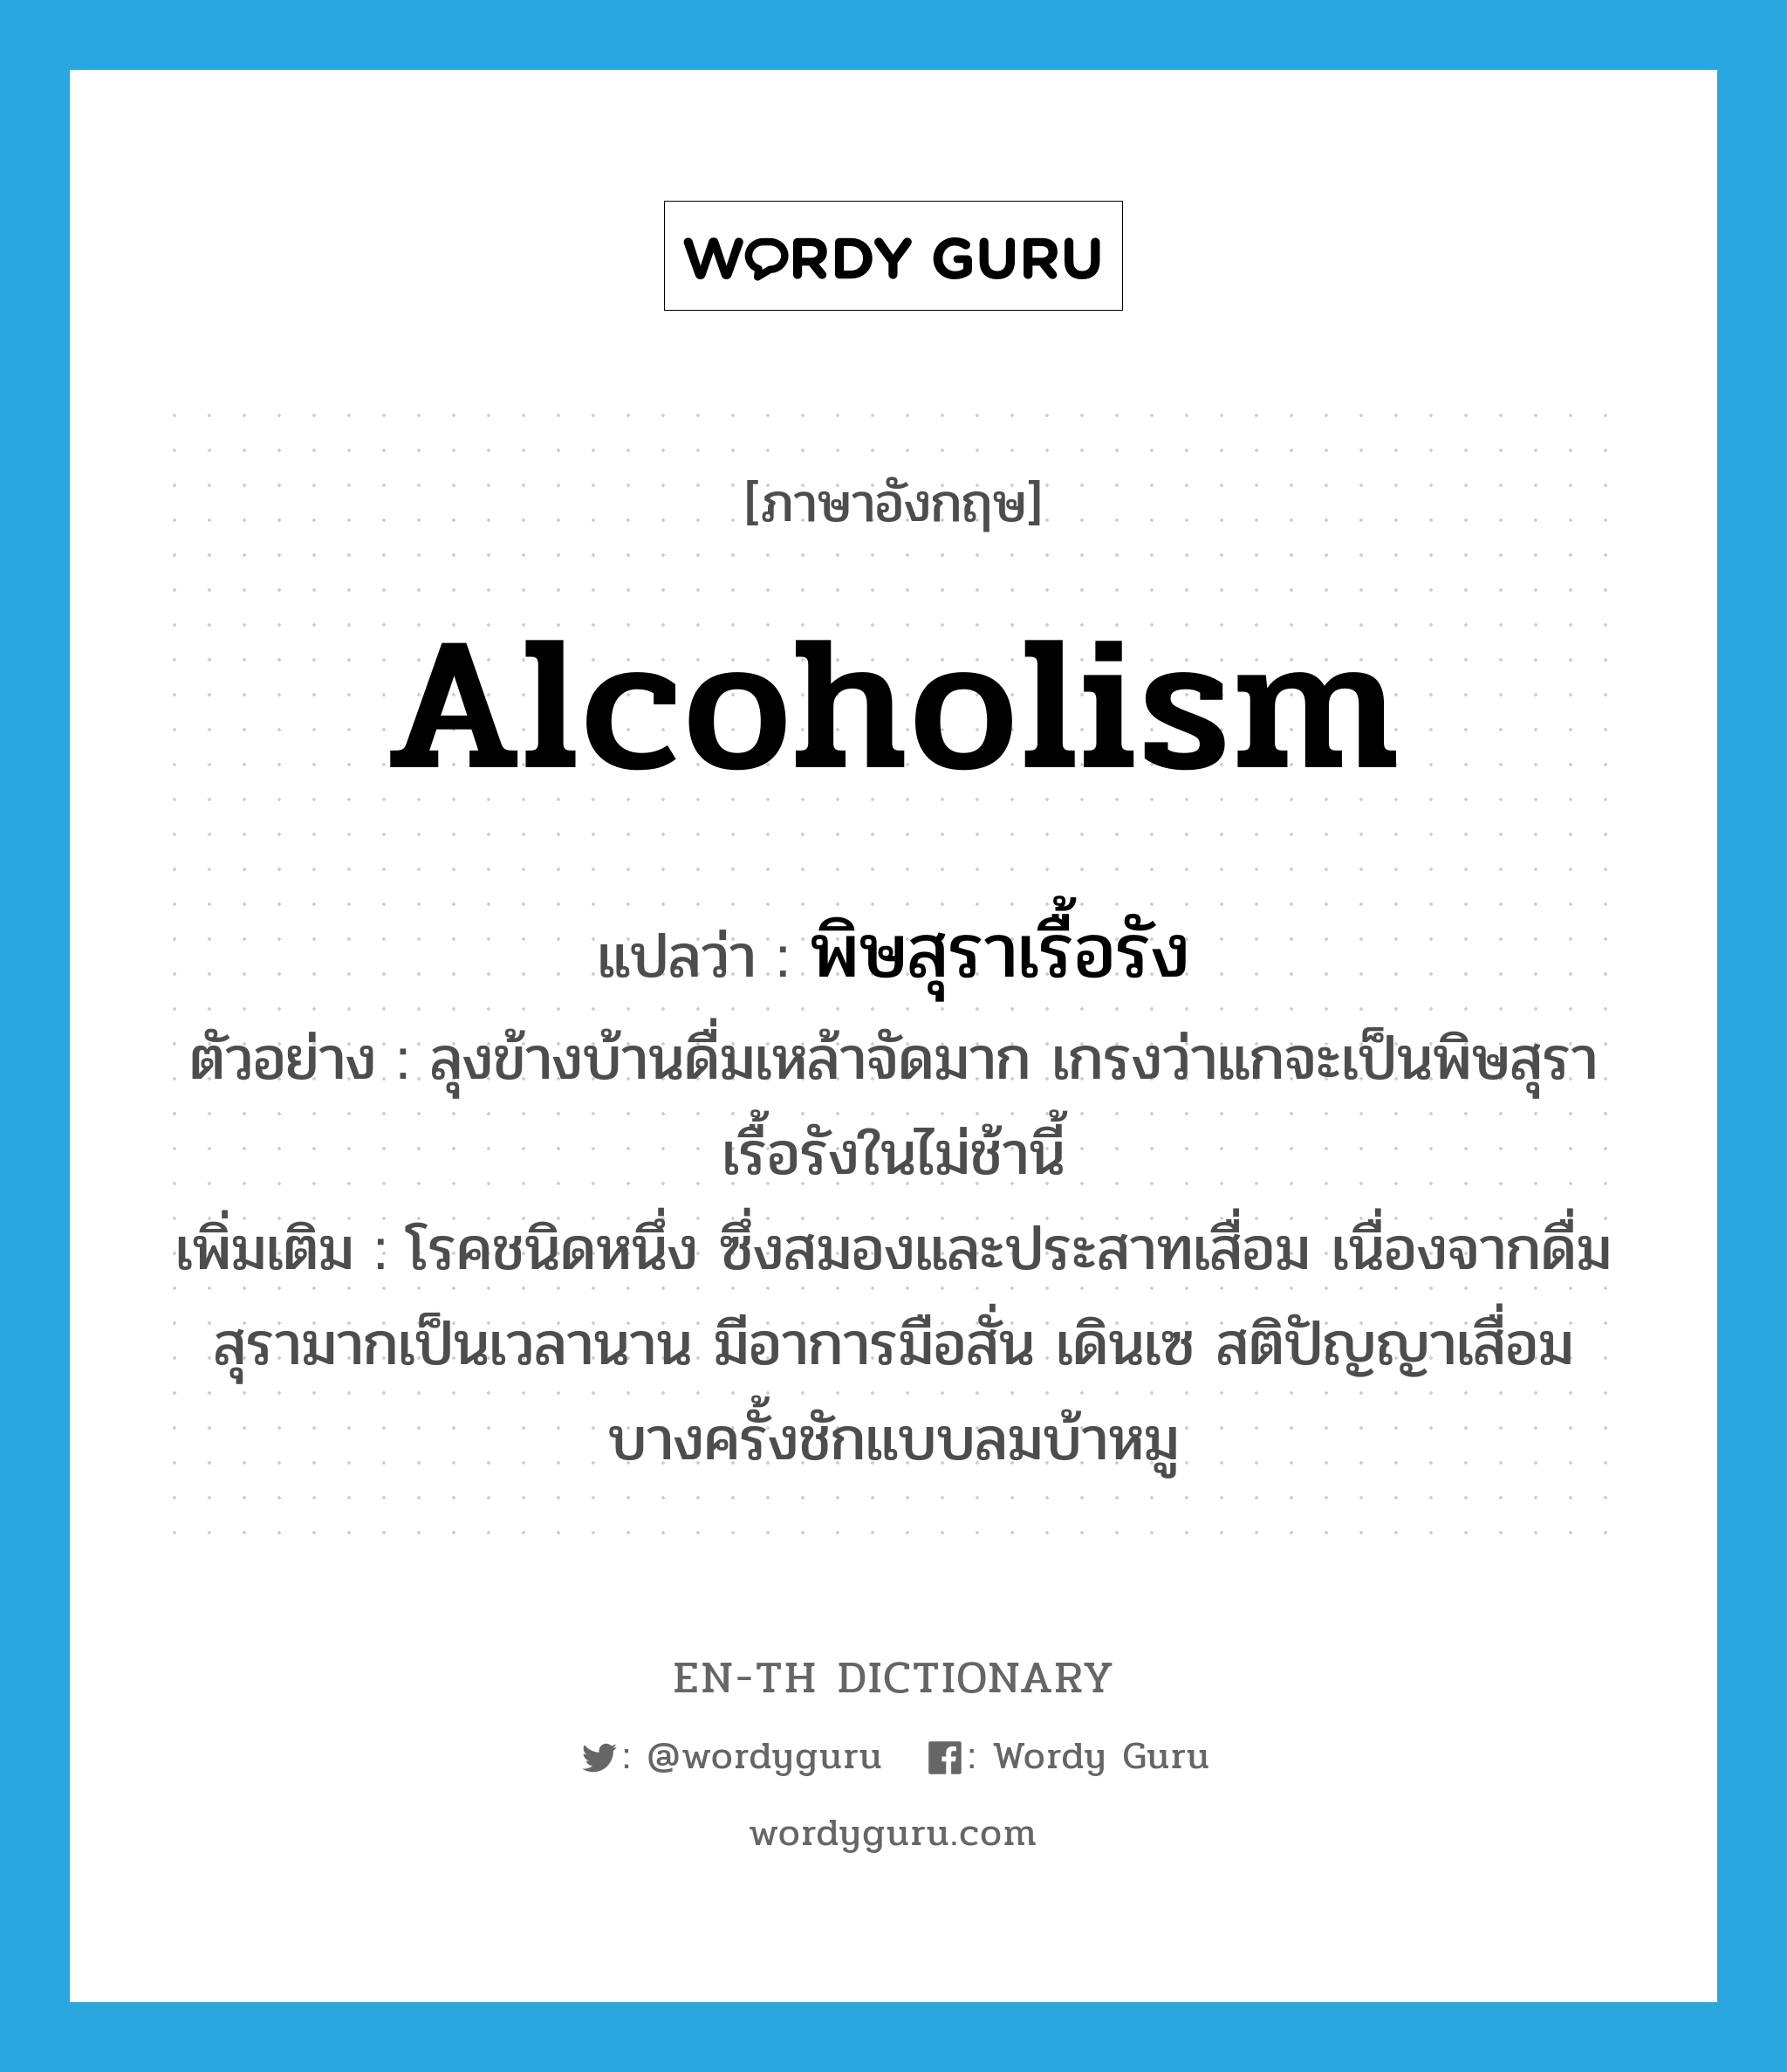 alcoholism แปลว่า?, คำศัพท์ภาษาอังกฤษ alcoholism แปลว่า พิษสุราเรื้อรัง ประเภท N ตัวอย่าง ลุงข้างบ้านดื่มเหล้าจัดมาก เกรงว่าแกจะเป็นพิษสุราเรื้อรังในไม่ช้านี้ เพิ่มเติม โรคชนิดหนึ่ง ซึ่งสมองและประสาทเสื่อม เนื่องจากดื่มสุรามากเป็นเวลานาน มีอาการมือสั่น เดินเซ สติปัญญาเสื่อม บางครั้งชักแบบลมบ้าหมู หมวด N